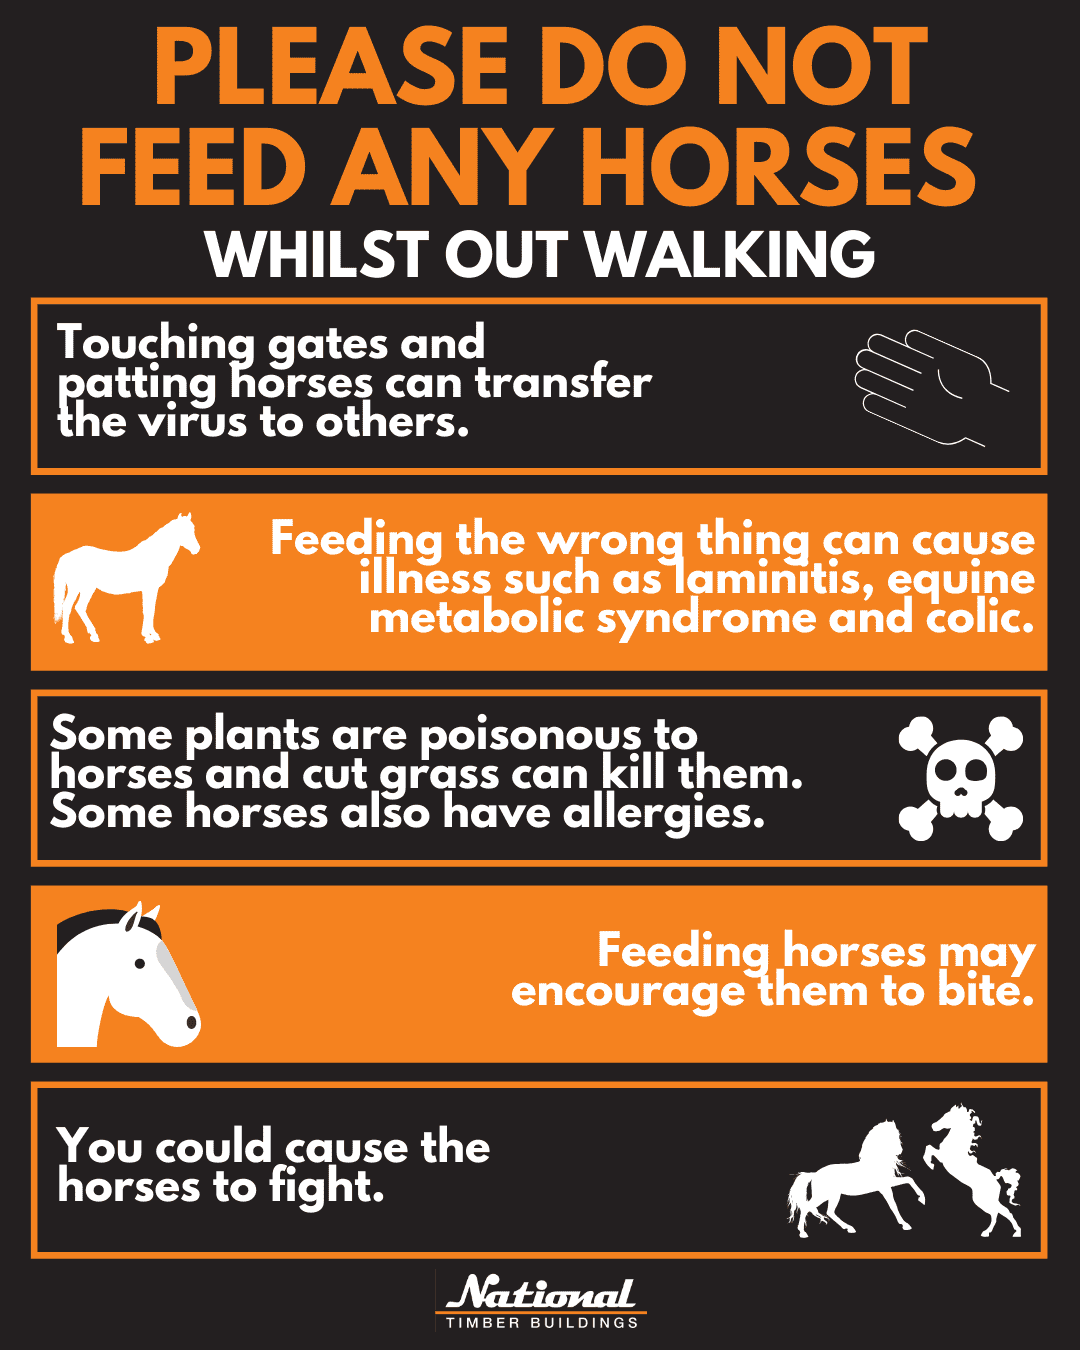 Please do not feed any horses